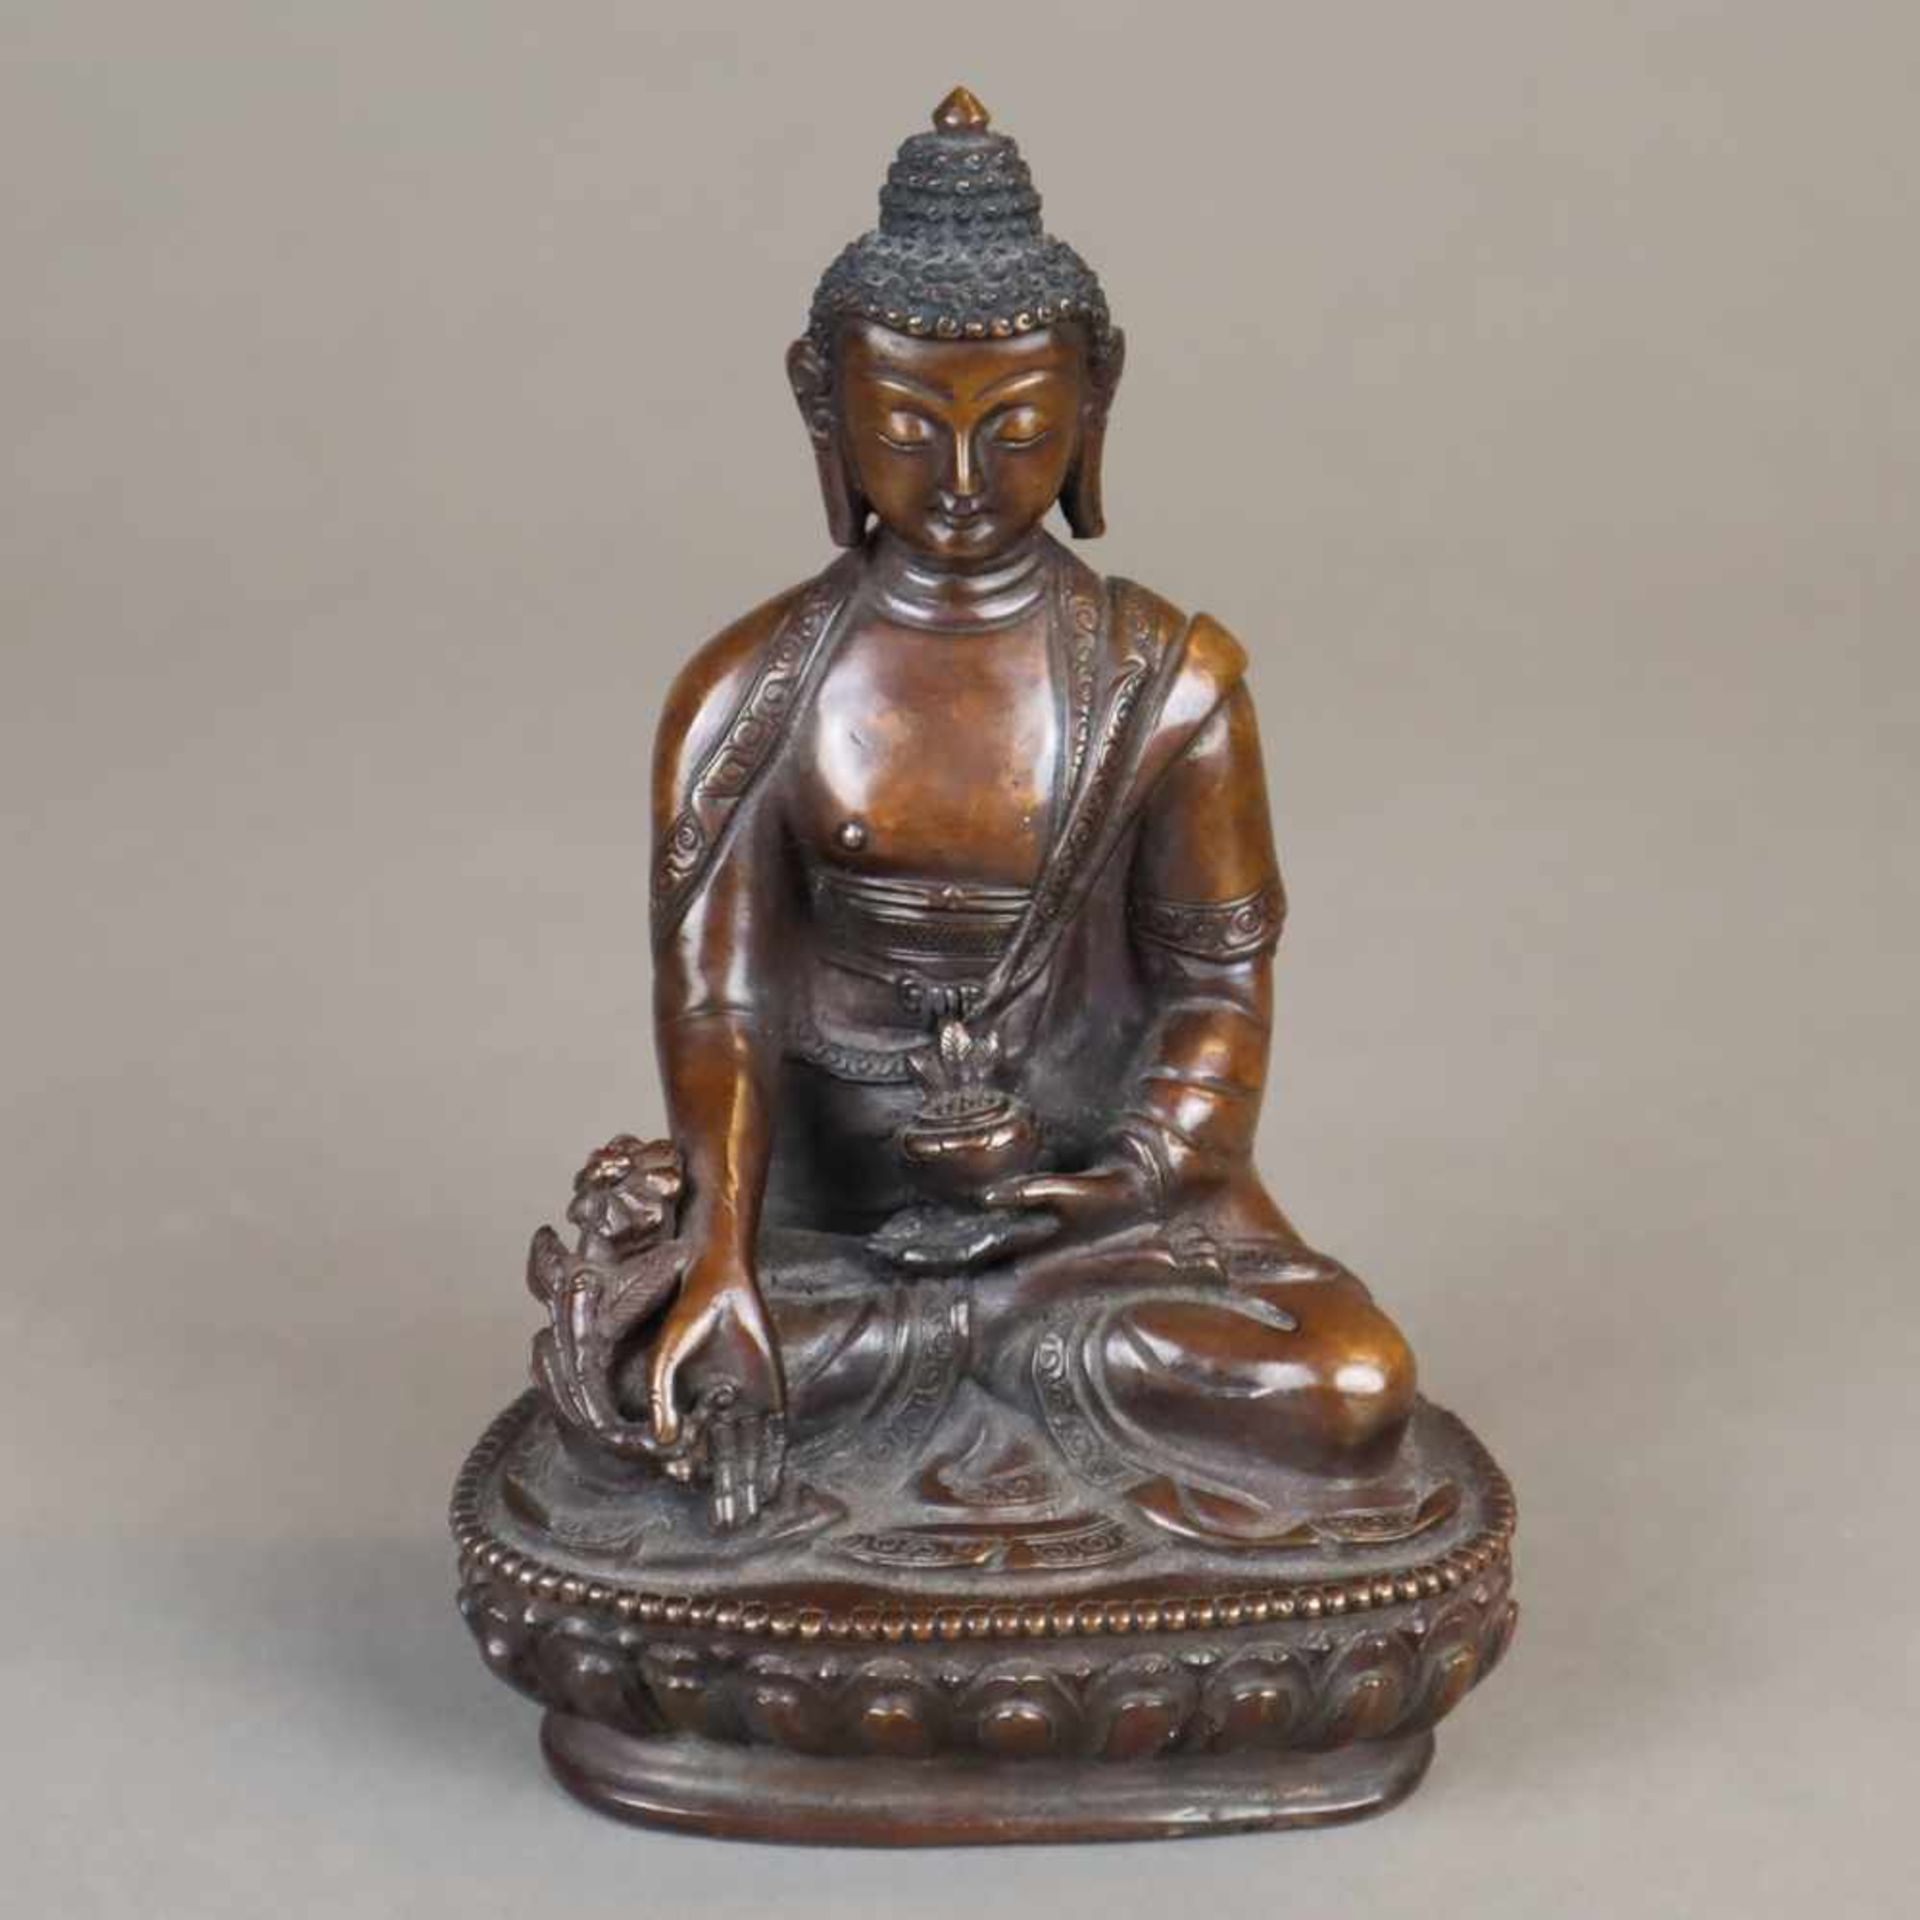 Der Medizin-Buddha Bhaisajyaguru - China, Kupferbronze, im Meditationssitz auf einem einfachen